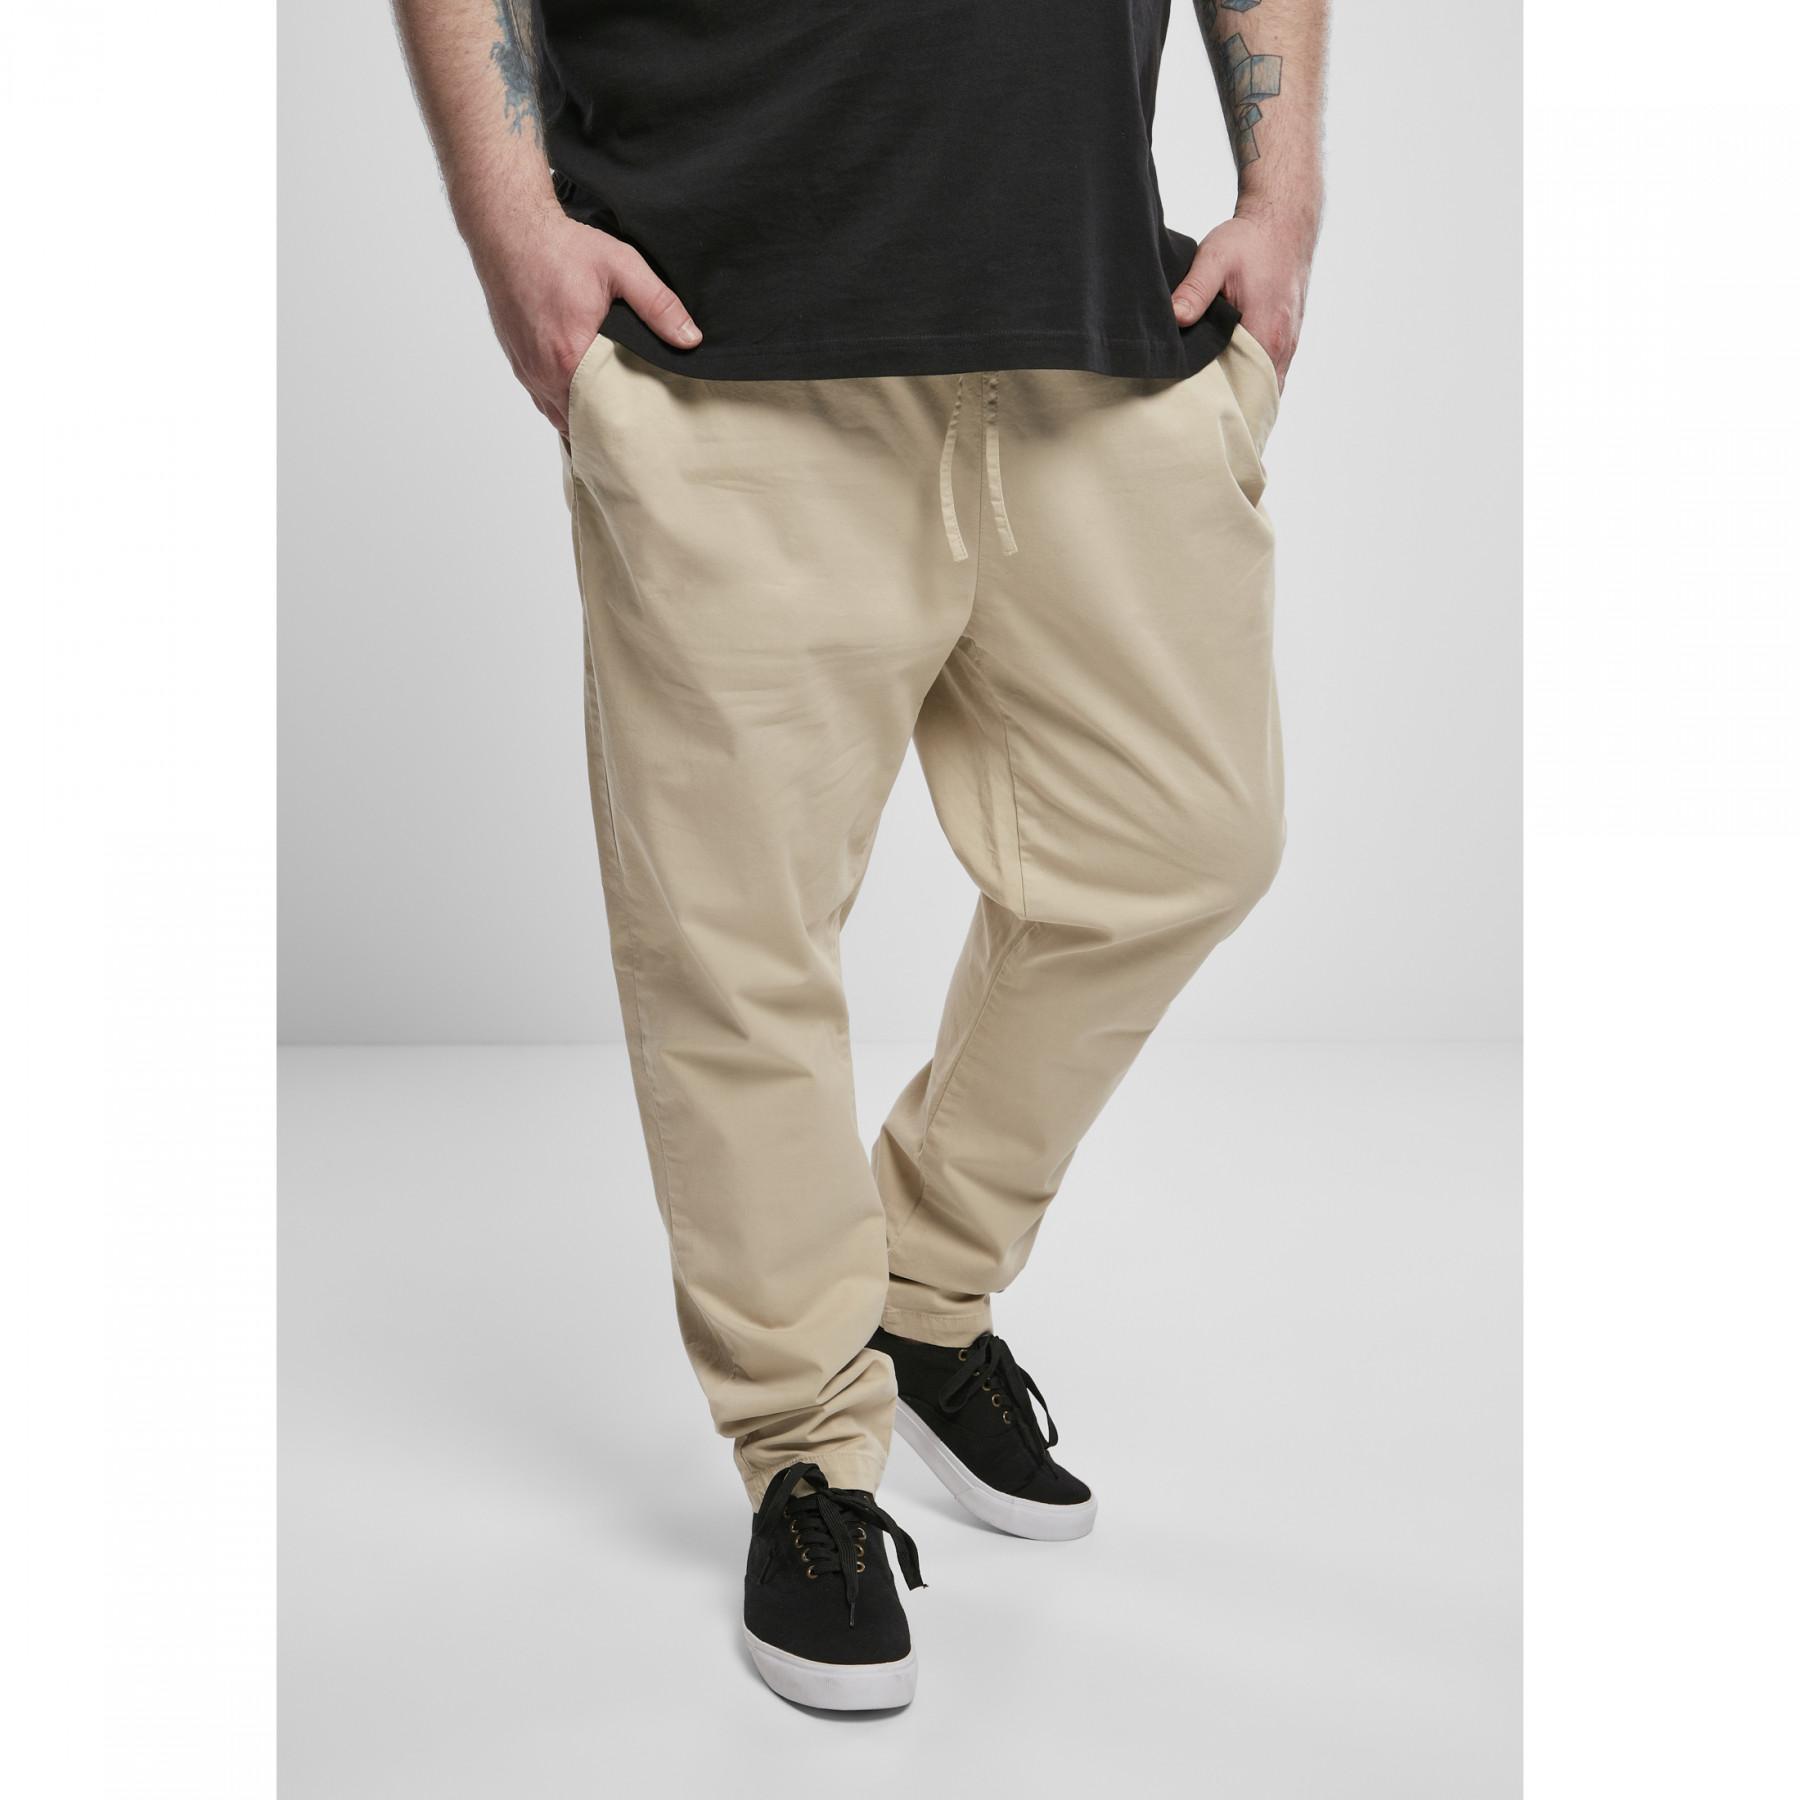 Pantaloni Urban Classics tapered cotton jogger (grandes tailles)